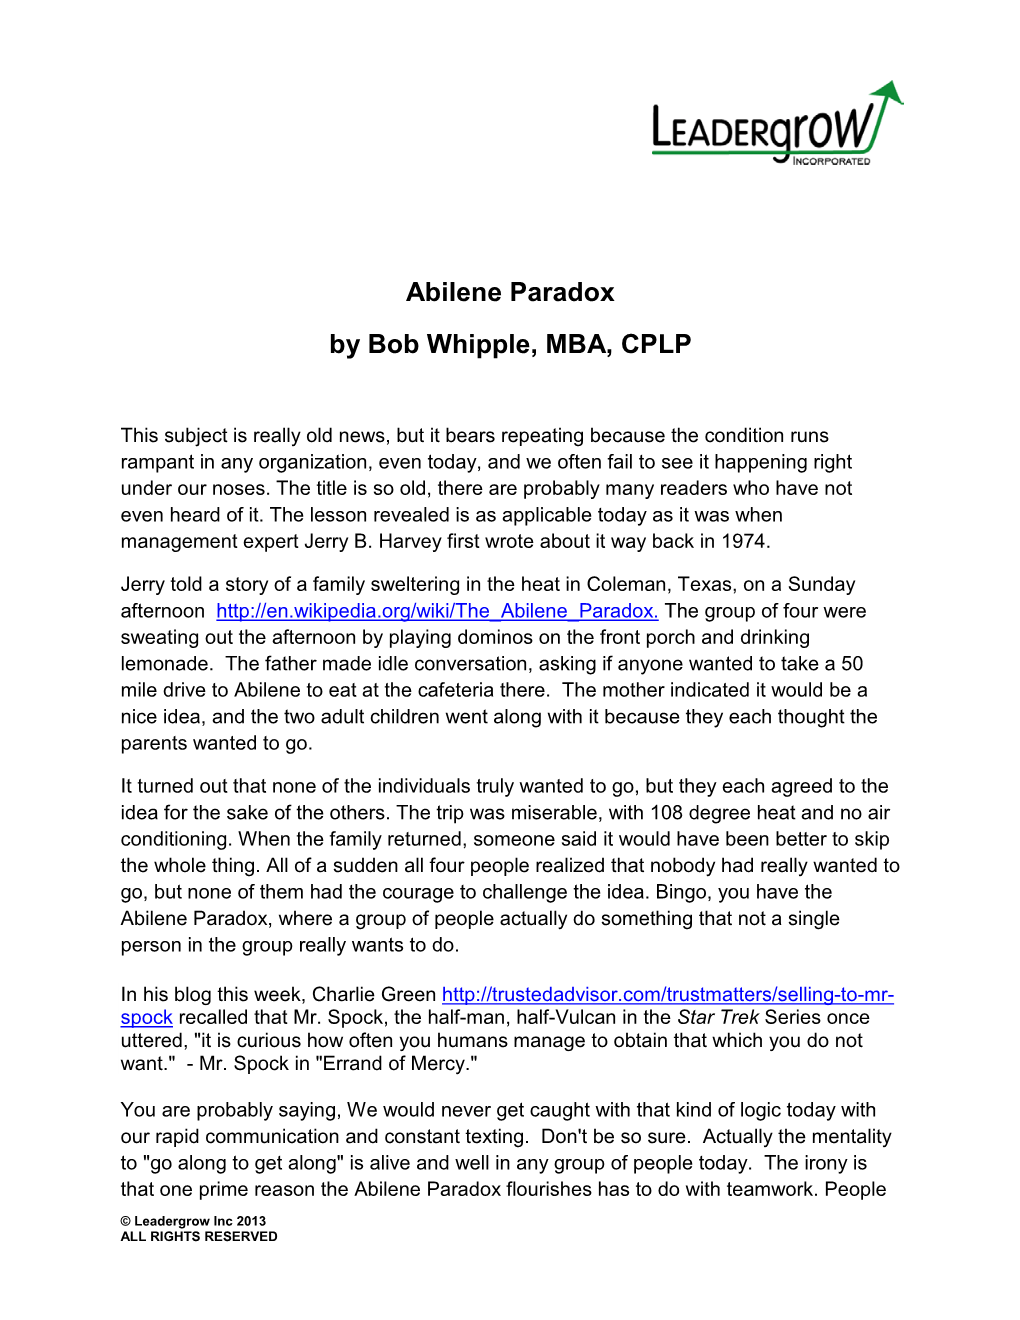 Abilene Paradox by Bob Whipple, MBA, CPLP